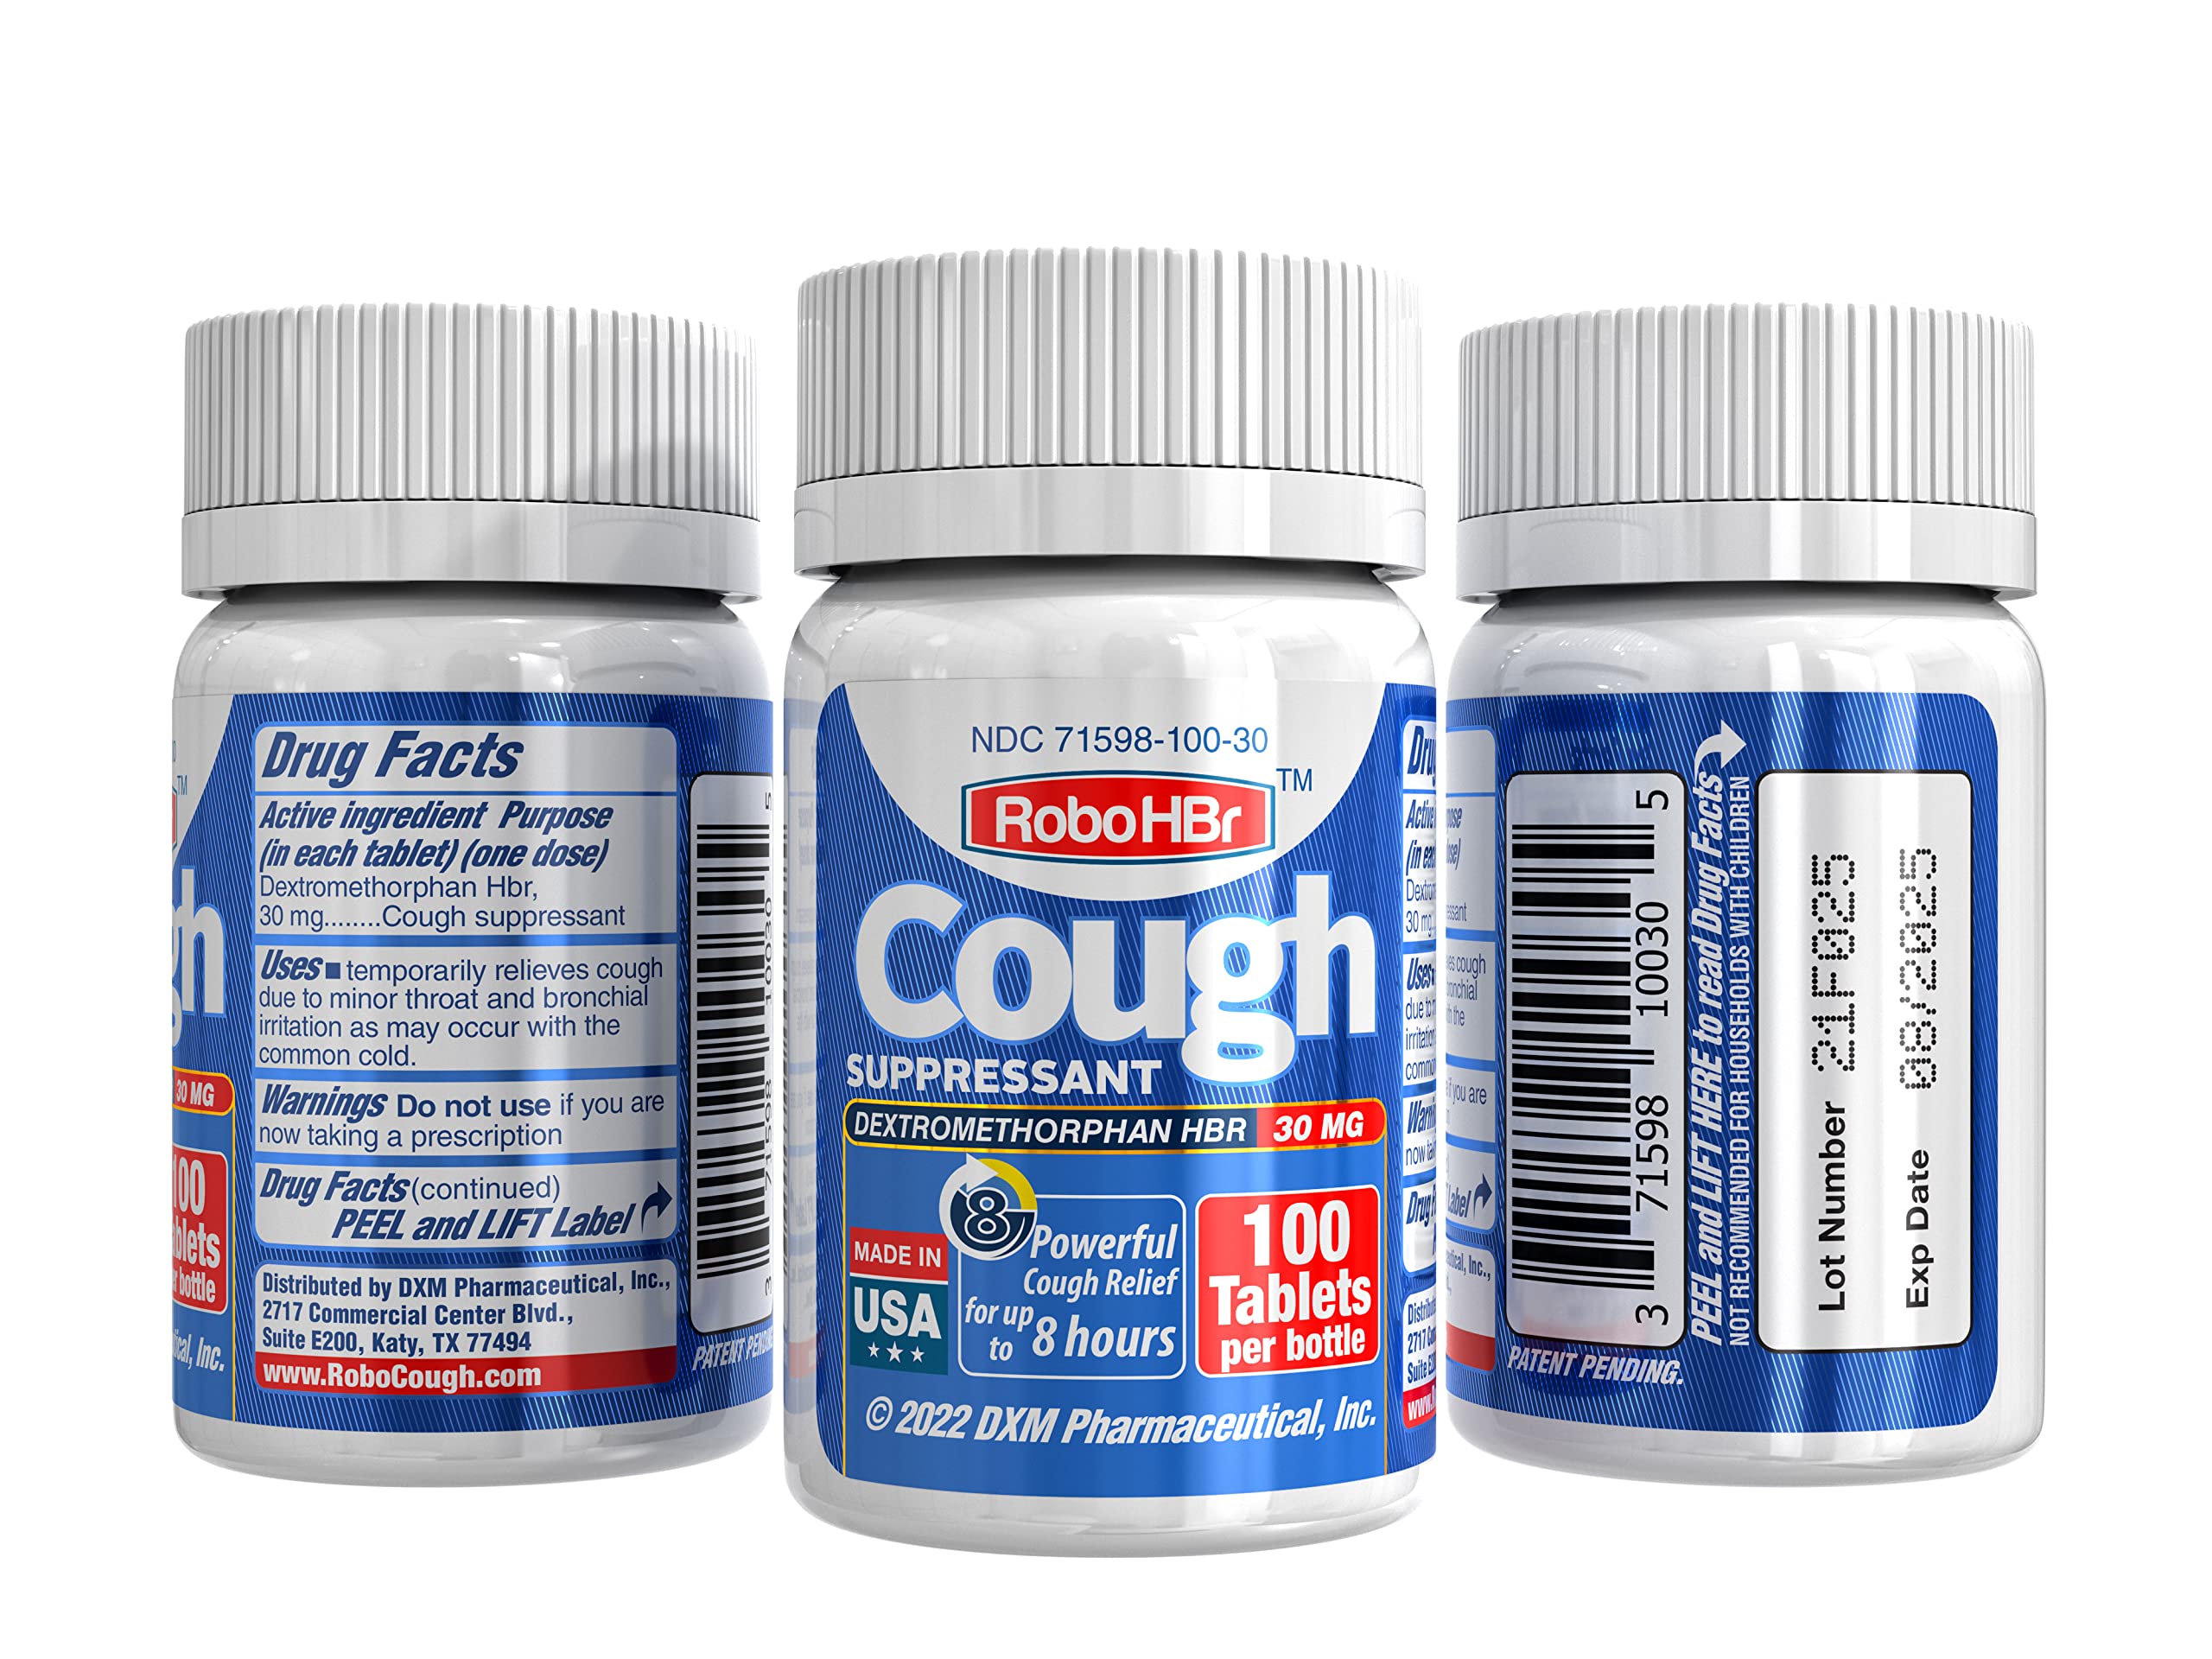 RoboHBr Cough suppressant, Dextromethorphan HBr 30 mg, 100 Tablets, 100 Doses